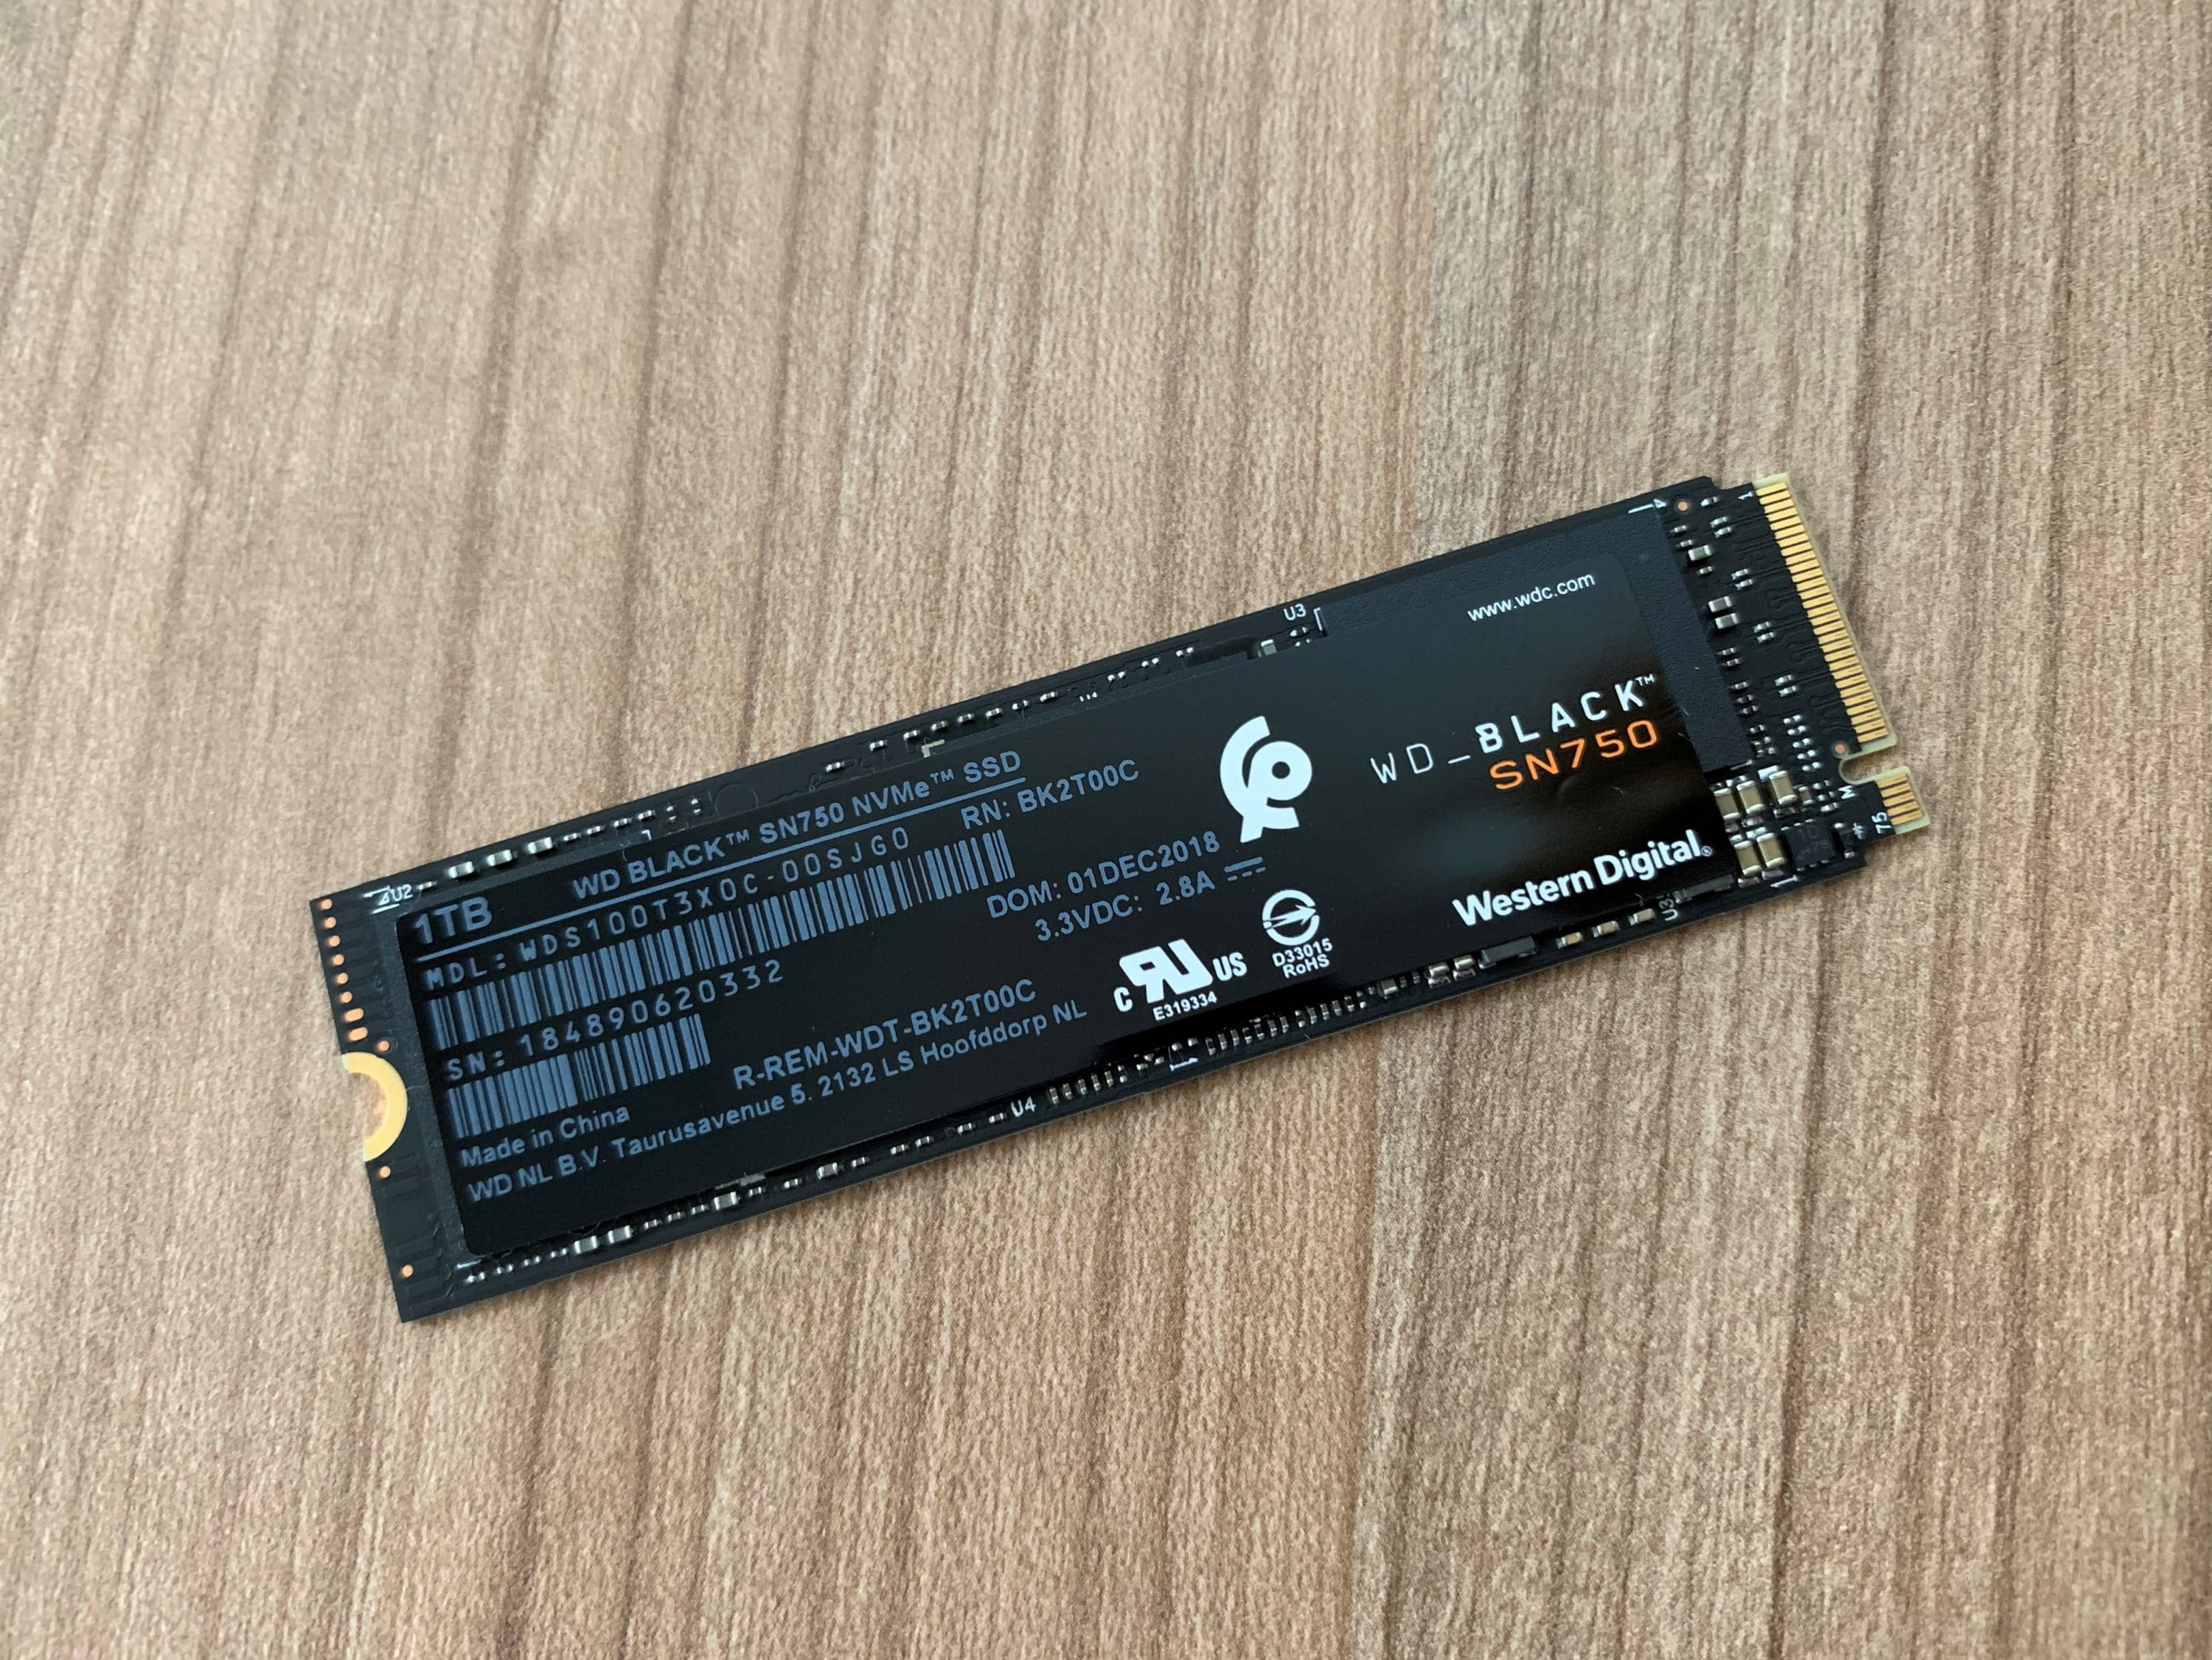 WD Black SN750 1 TB NVMe SSD Review